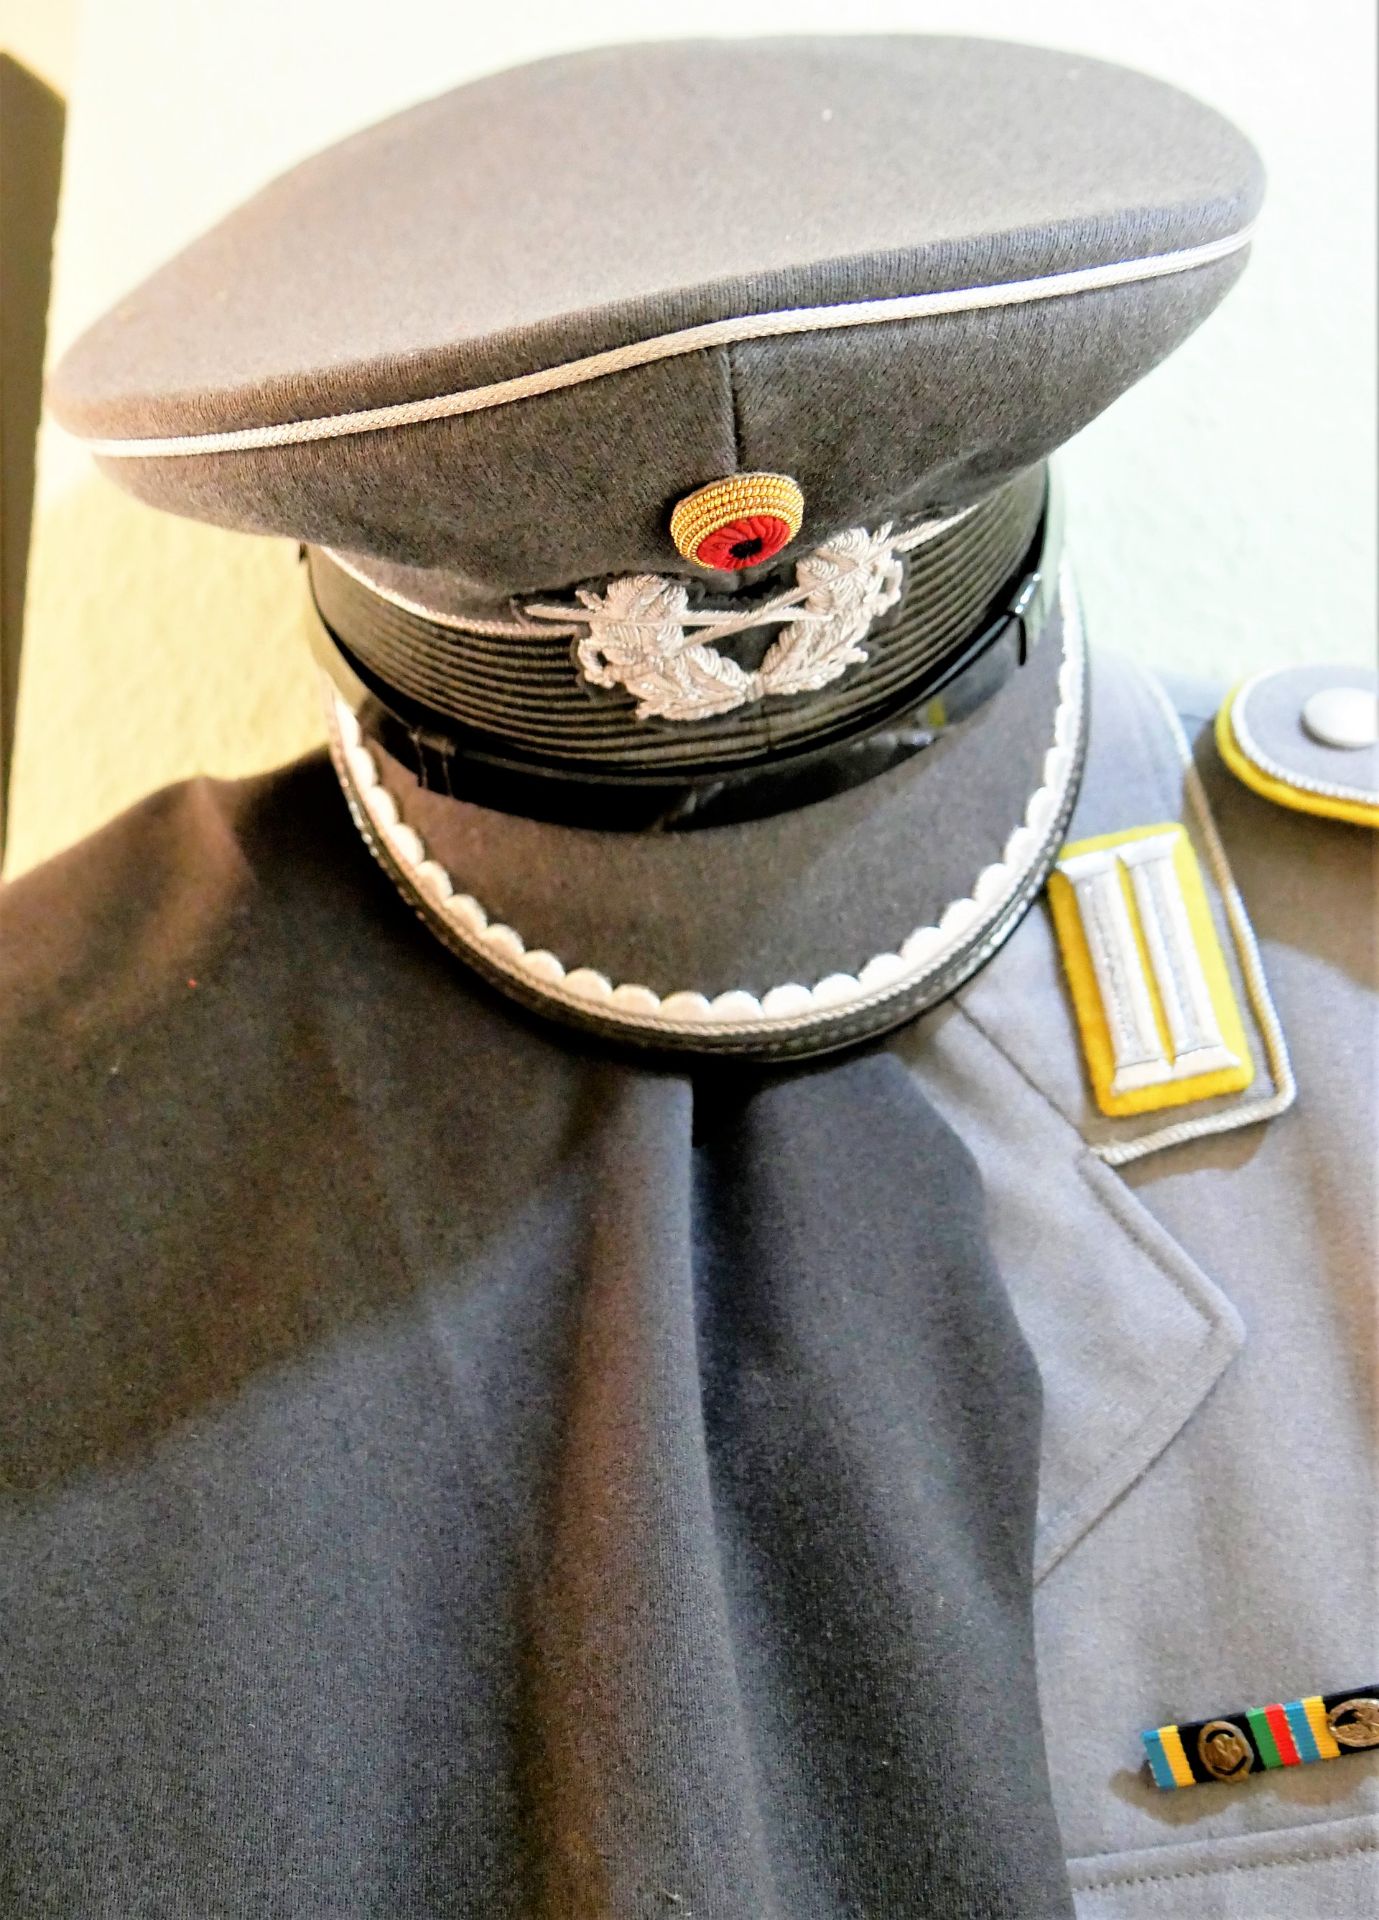 Bundeswehr Offiziersuniform mit Effekten, bestehend aus 1 Jacke, 1 Hose und 1 Mütze.>/de> - Image 2 of 3